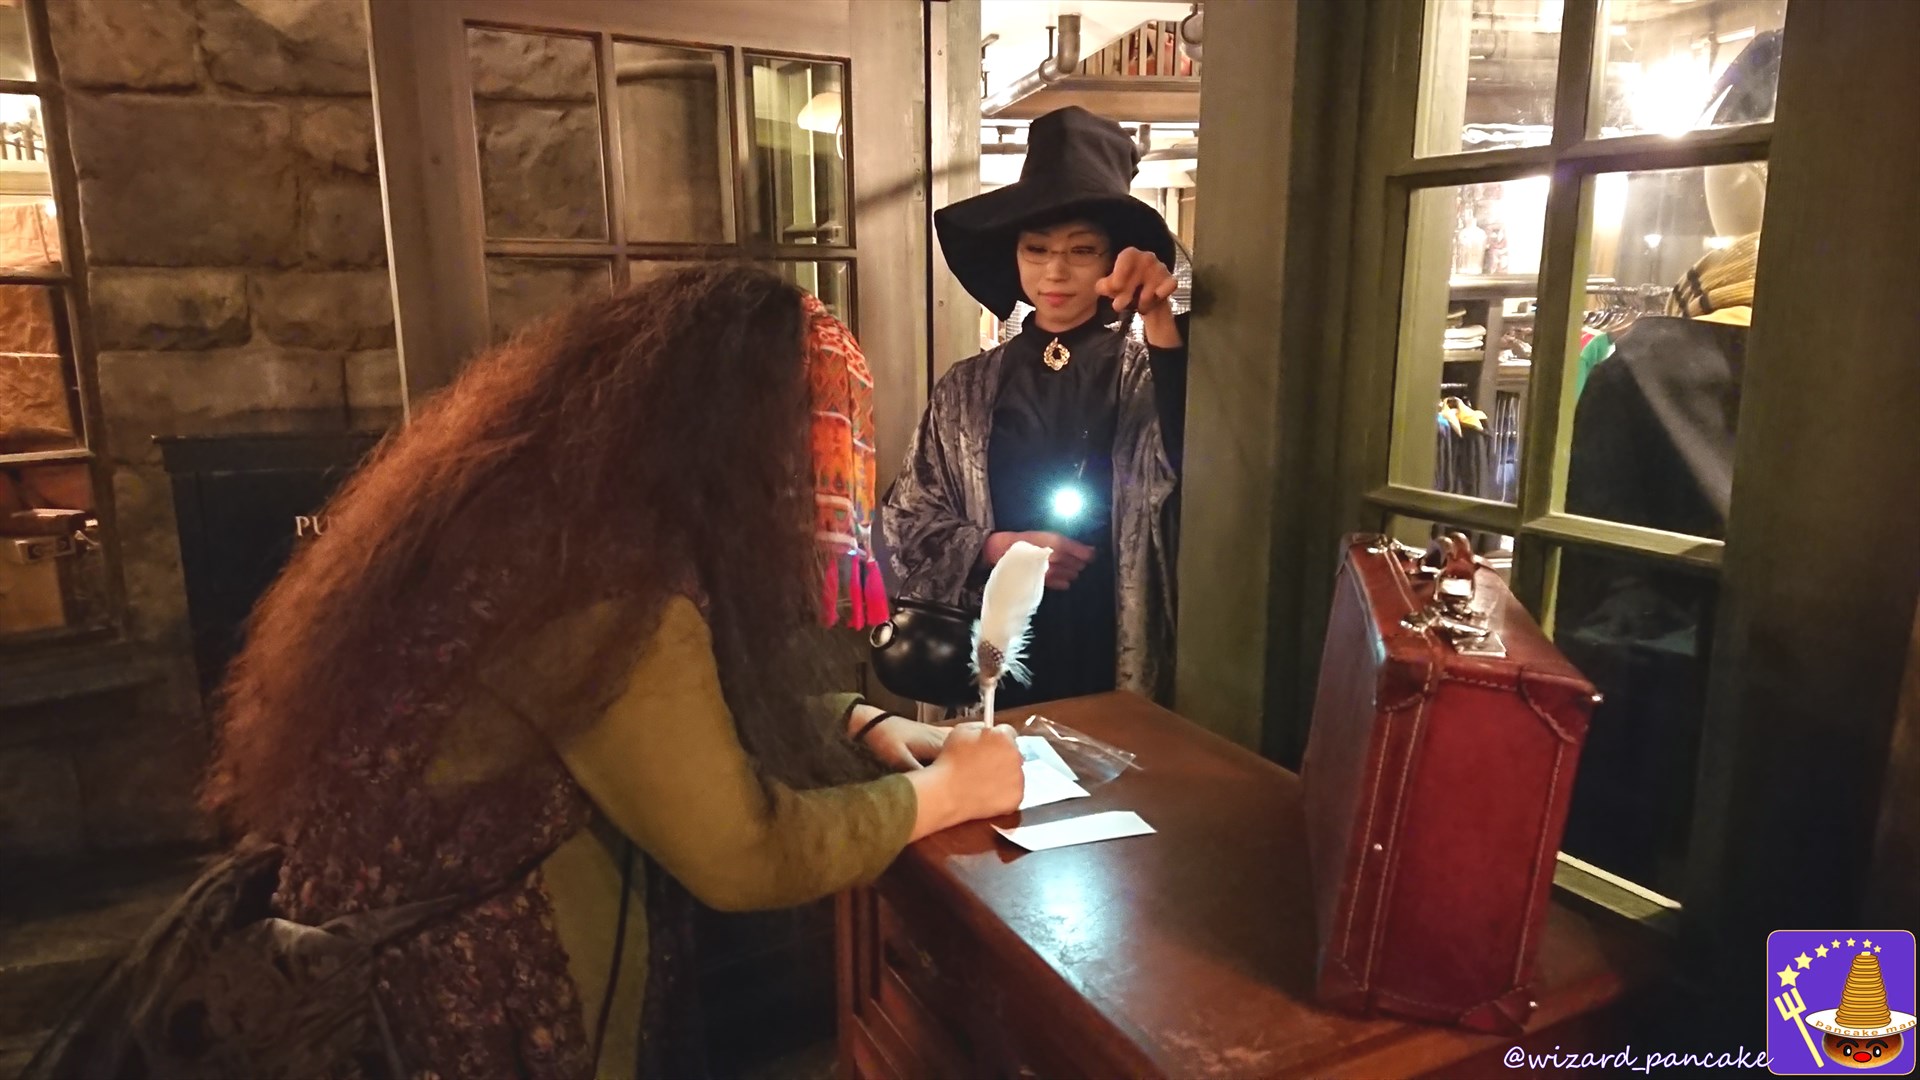 魔法界のポストの上で宛名を書くトレローニー先生の仮装をしたハリー・ポッター仲間